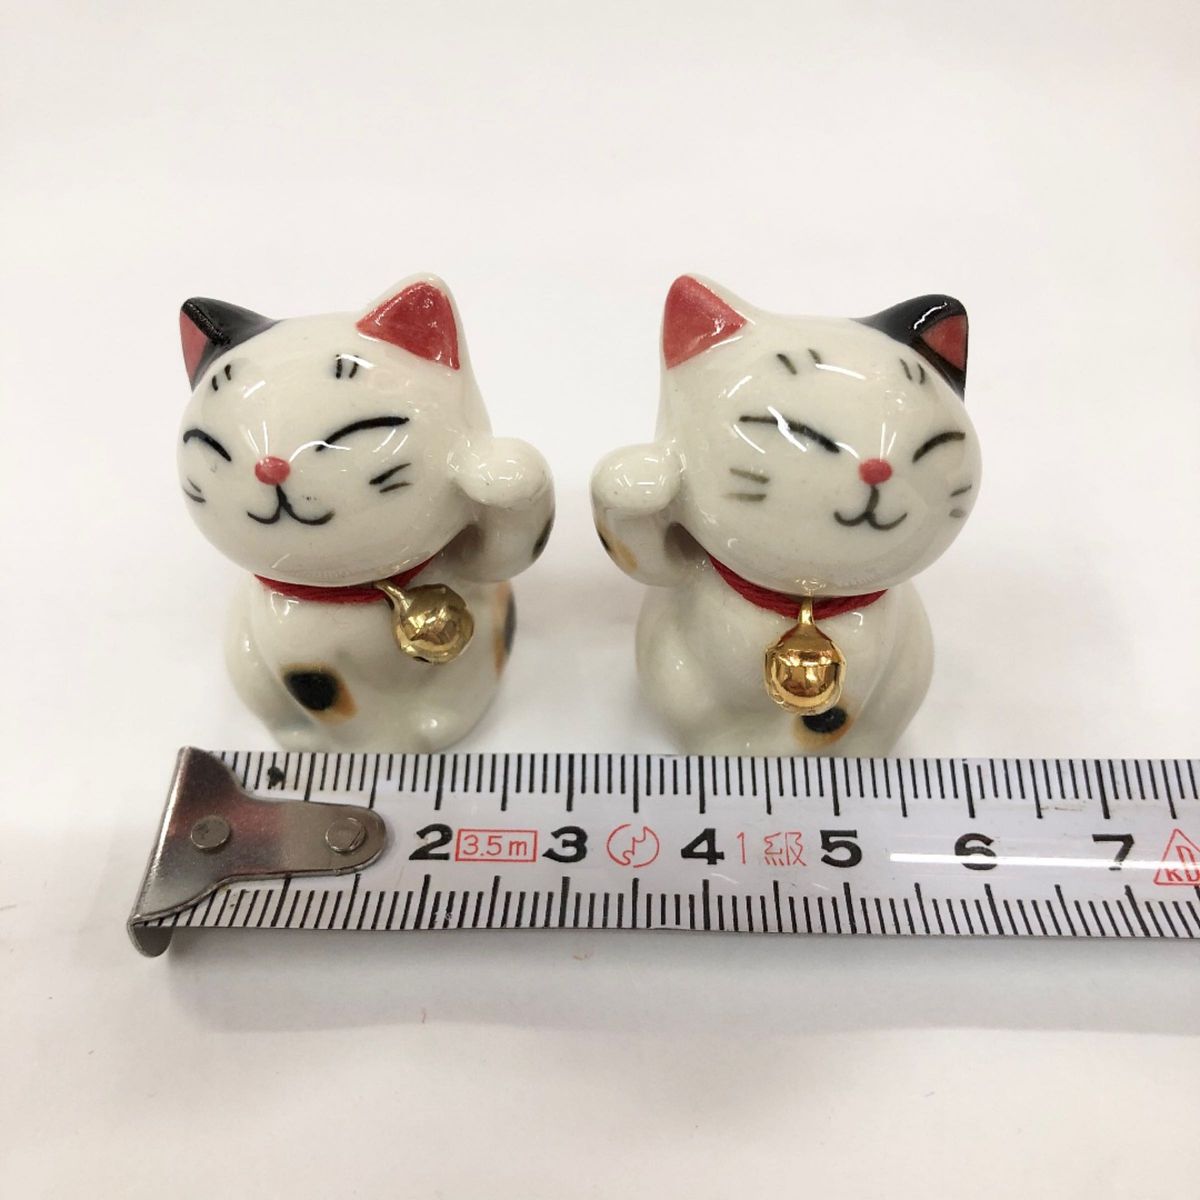 新品【みけ猫】ミニサイズペア招き猫 陶器 縁起物 置物 【日本製】